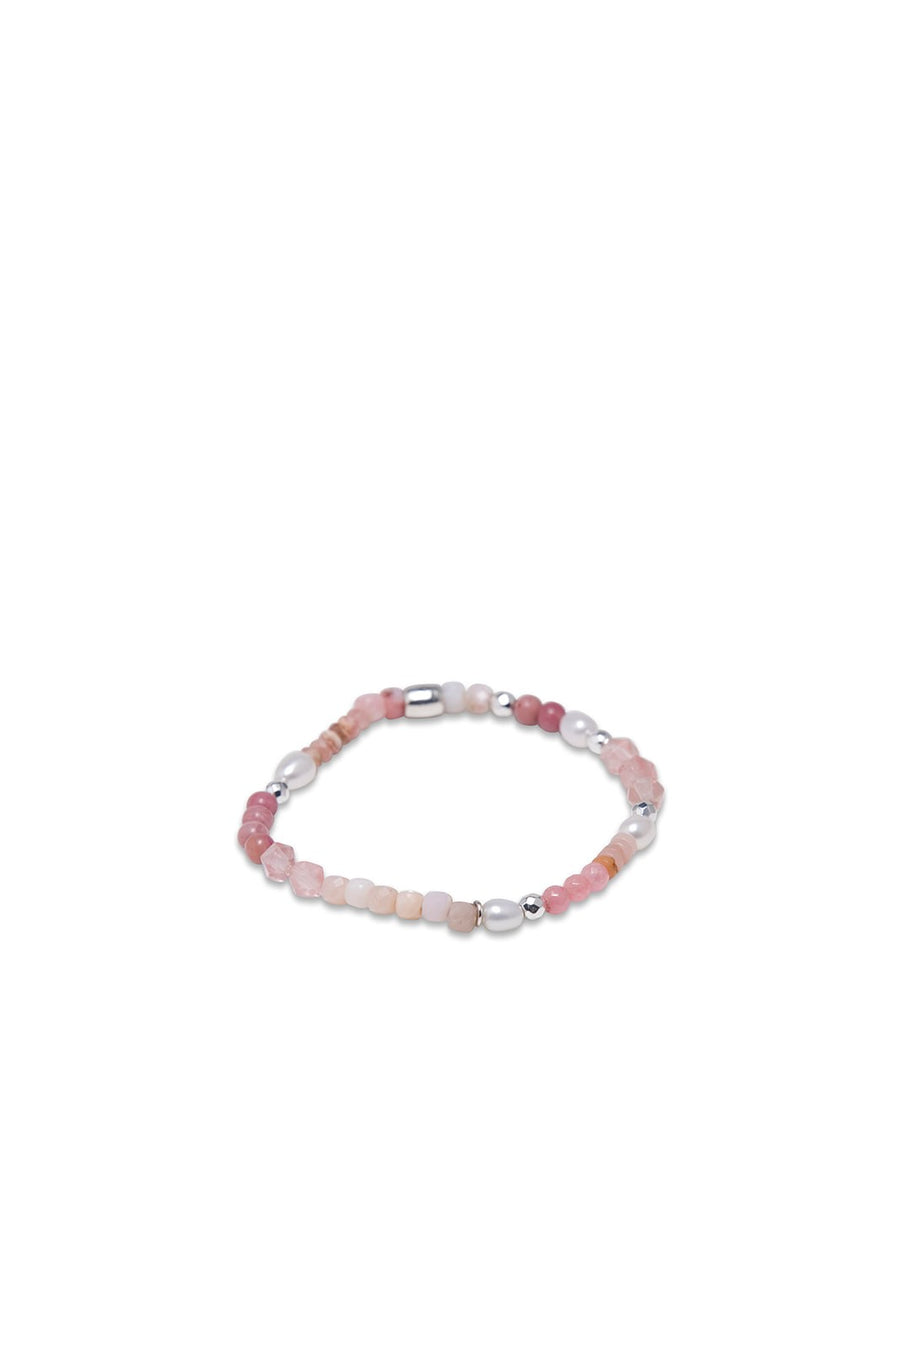 Multi-Stone Pink Stretch Bracelet